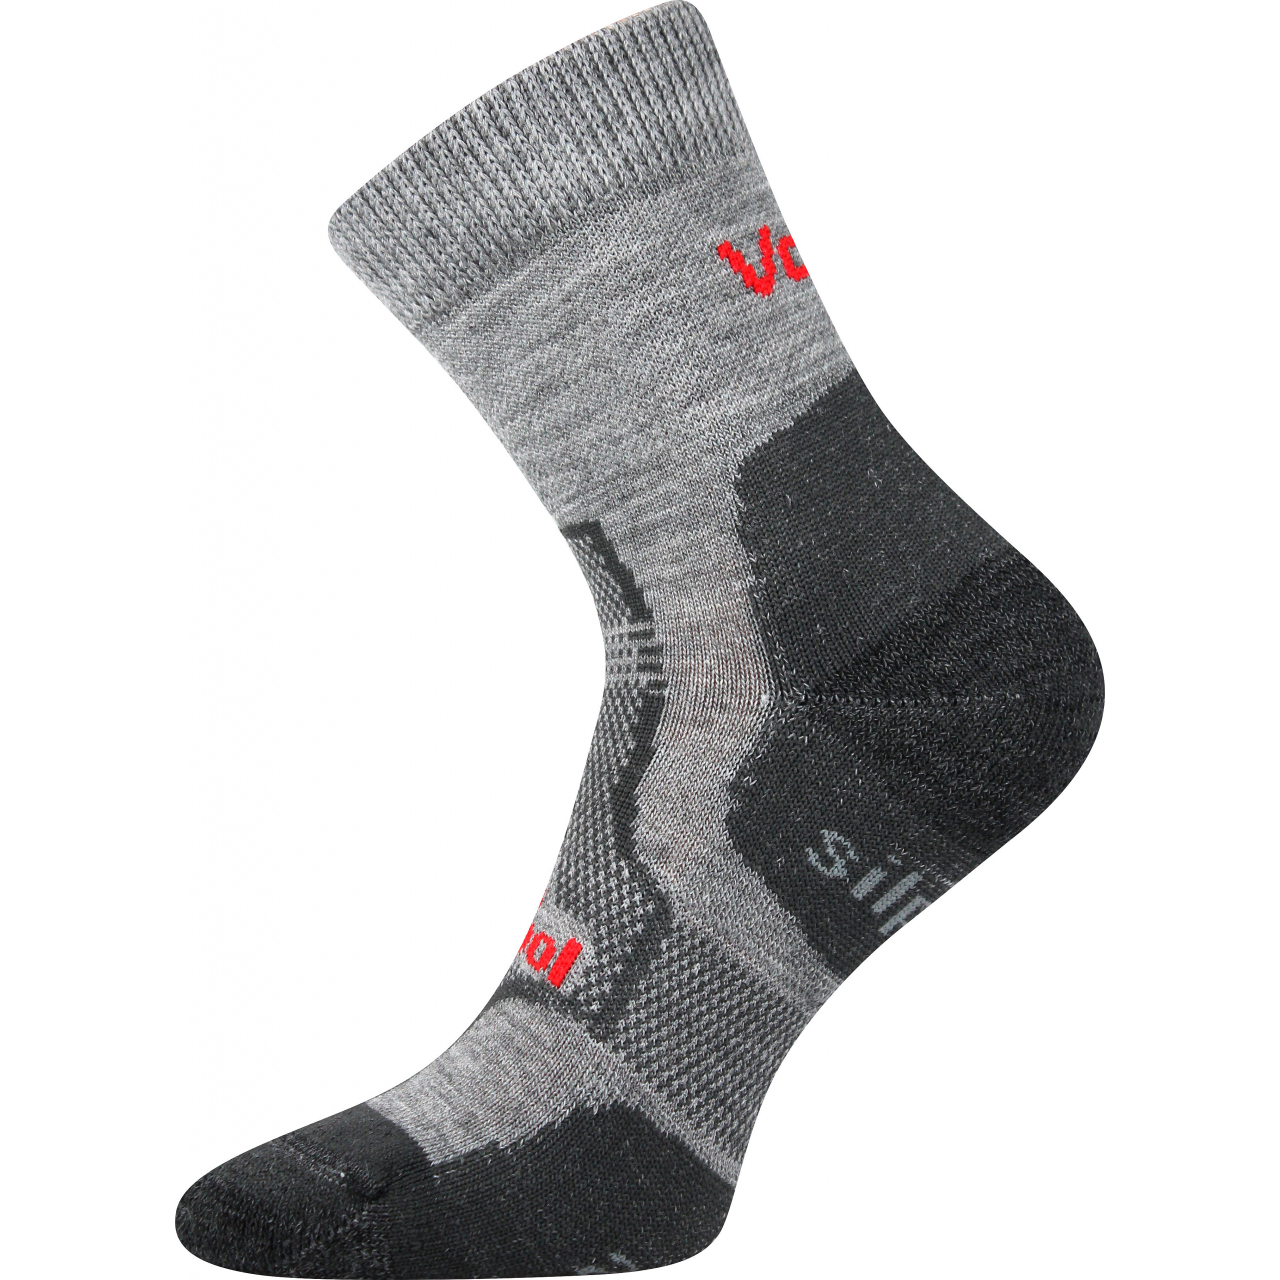 Ponožky unisex zimní Voxx Granit - světle šedé, 35-38